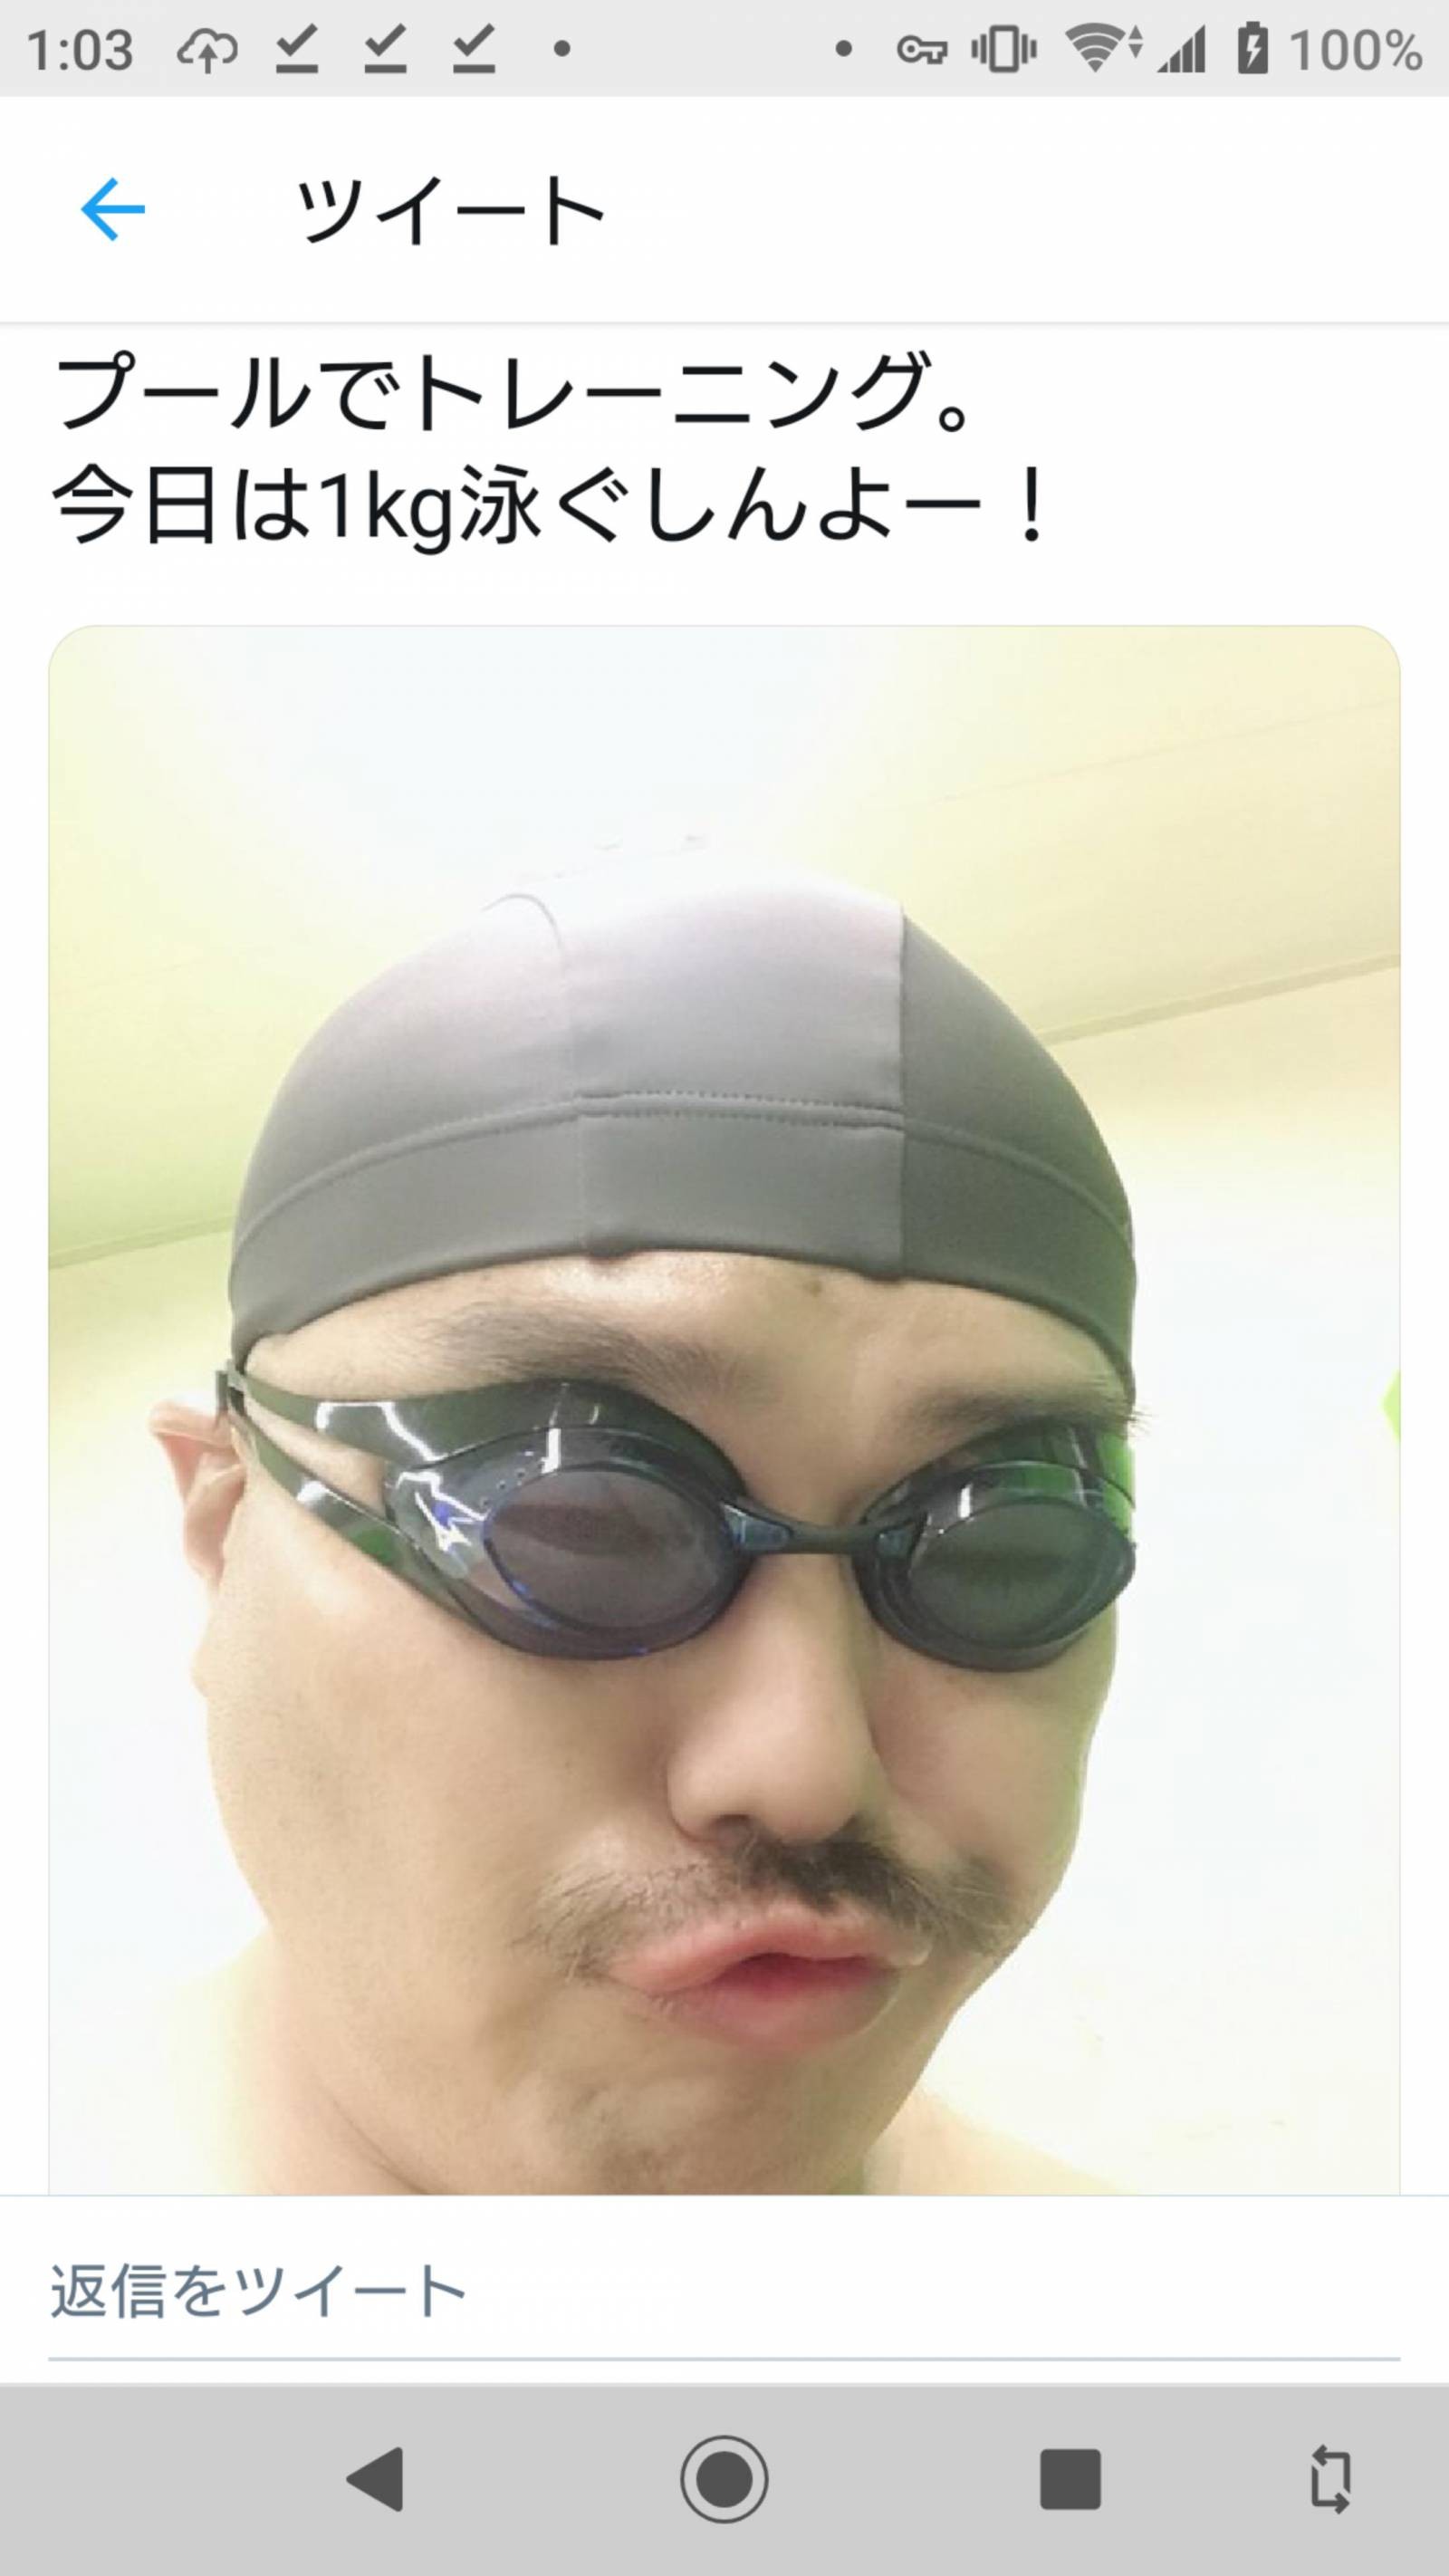 [Roho] Mr. Kuro, swim 1kg by swimming wwwwwwwwwwwwwwwwwwwwwwwwwwwww